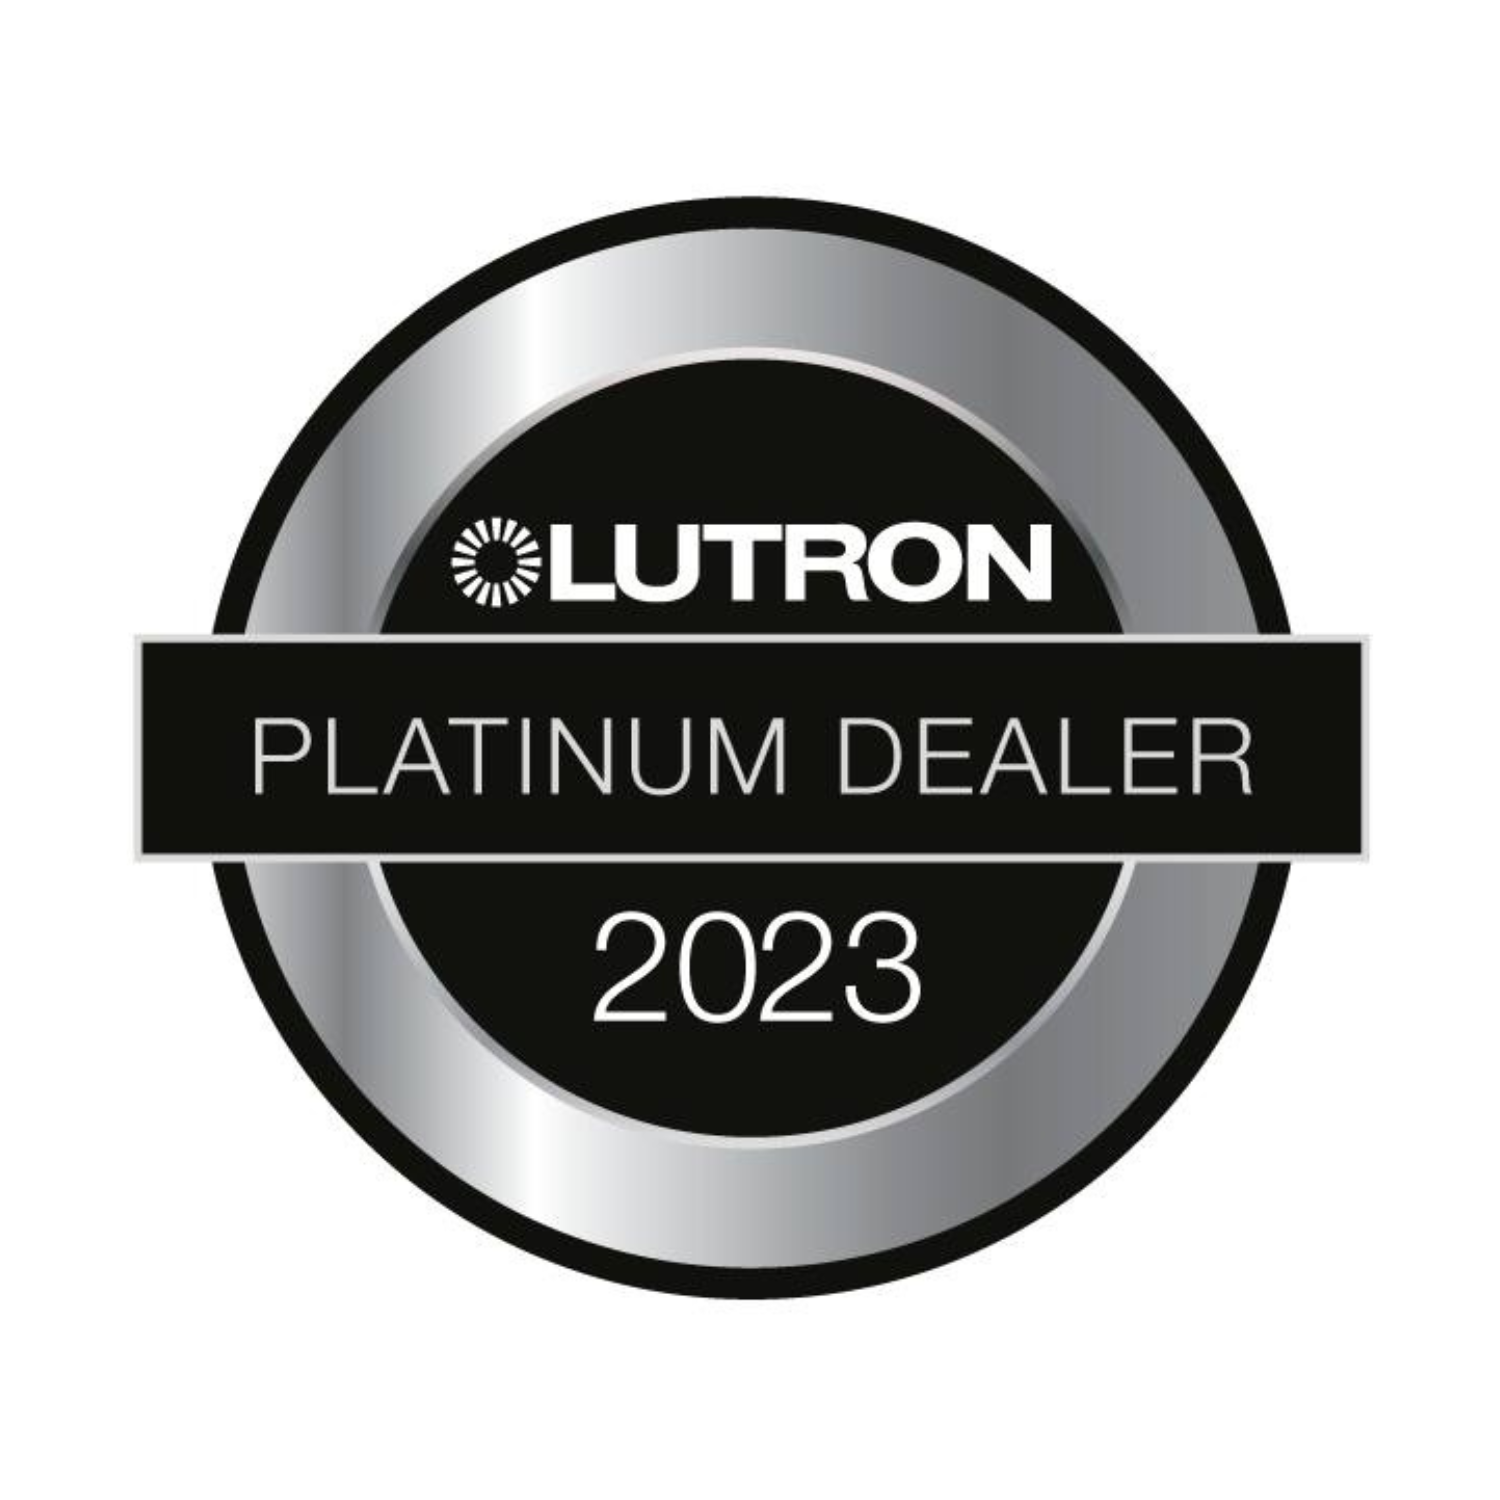 Lutron Platinum Dealer Badge for 2023